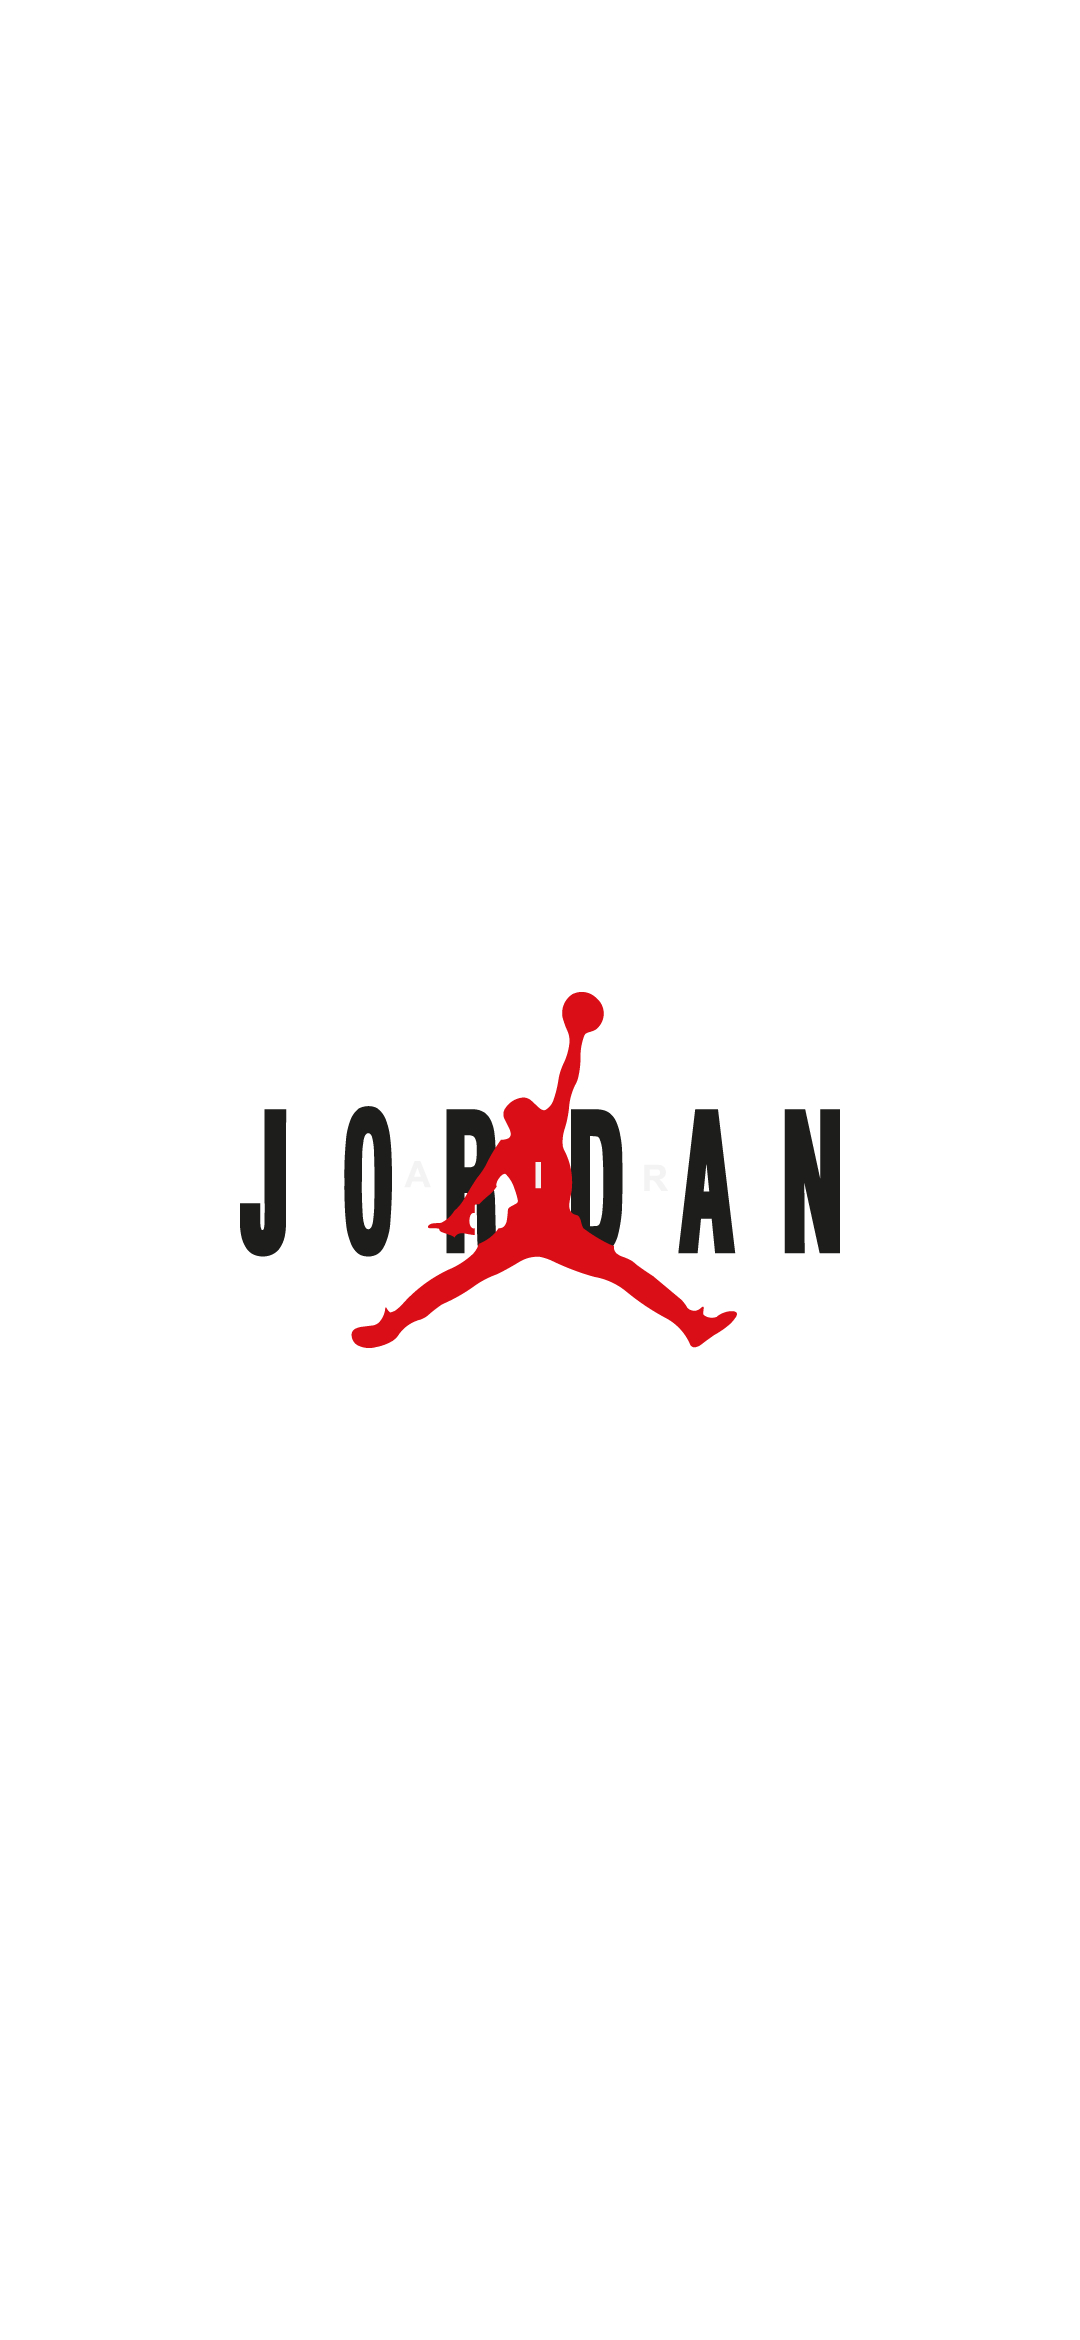 Air Jordan Nike Google Pixel 4a 5g 壁紙 待ち受け Sumaran